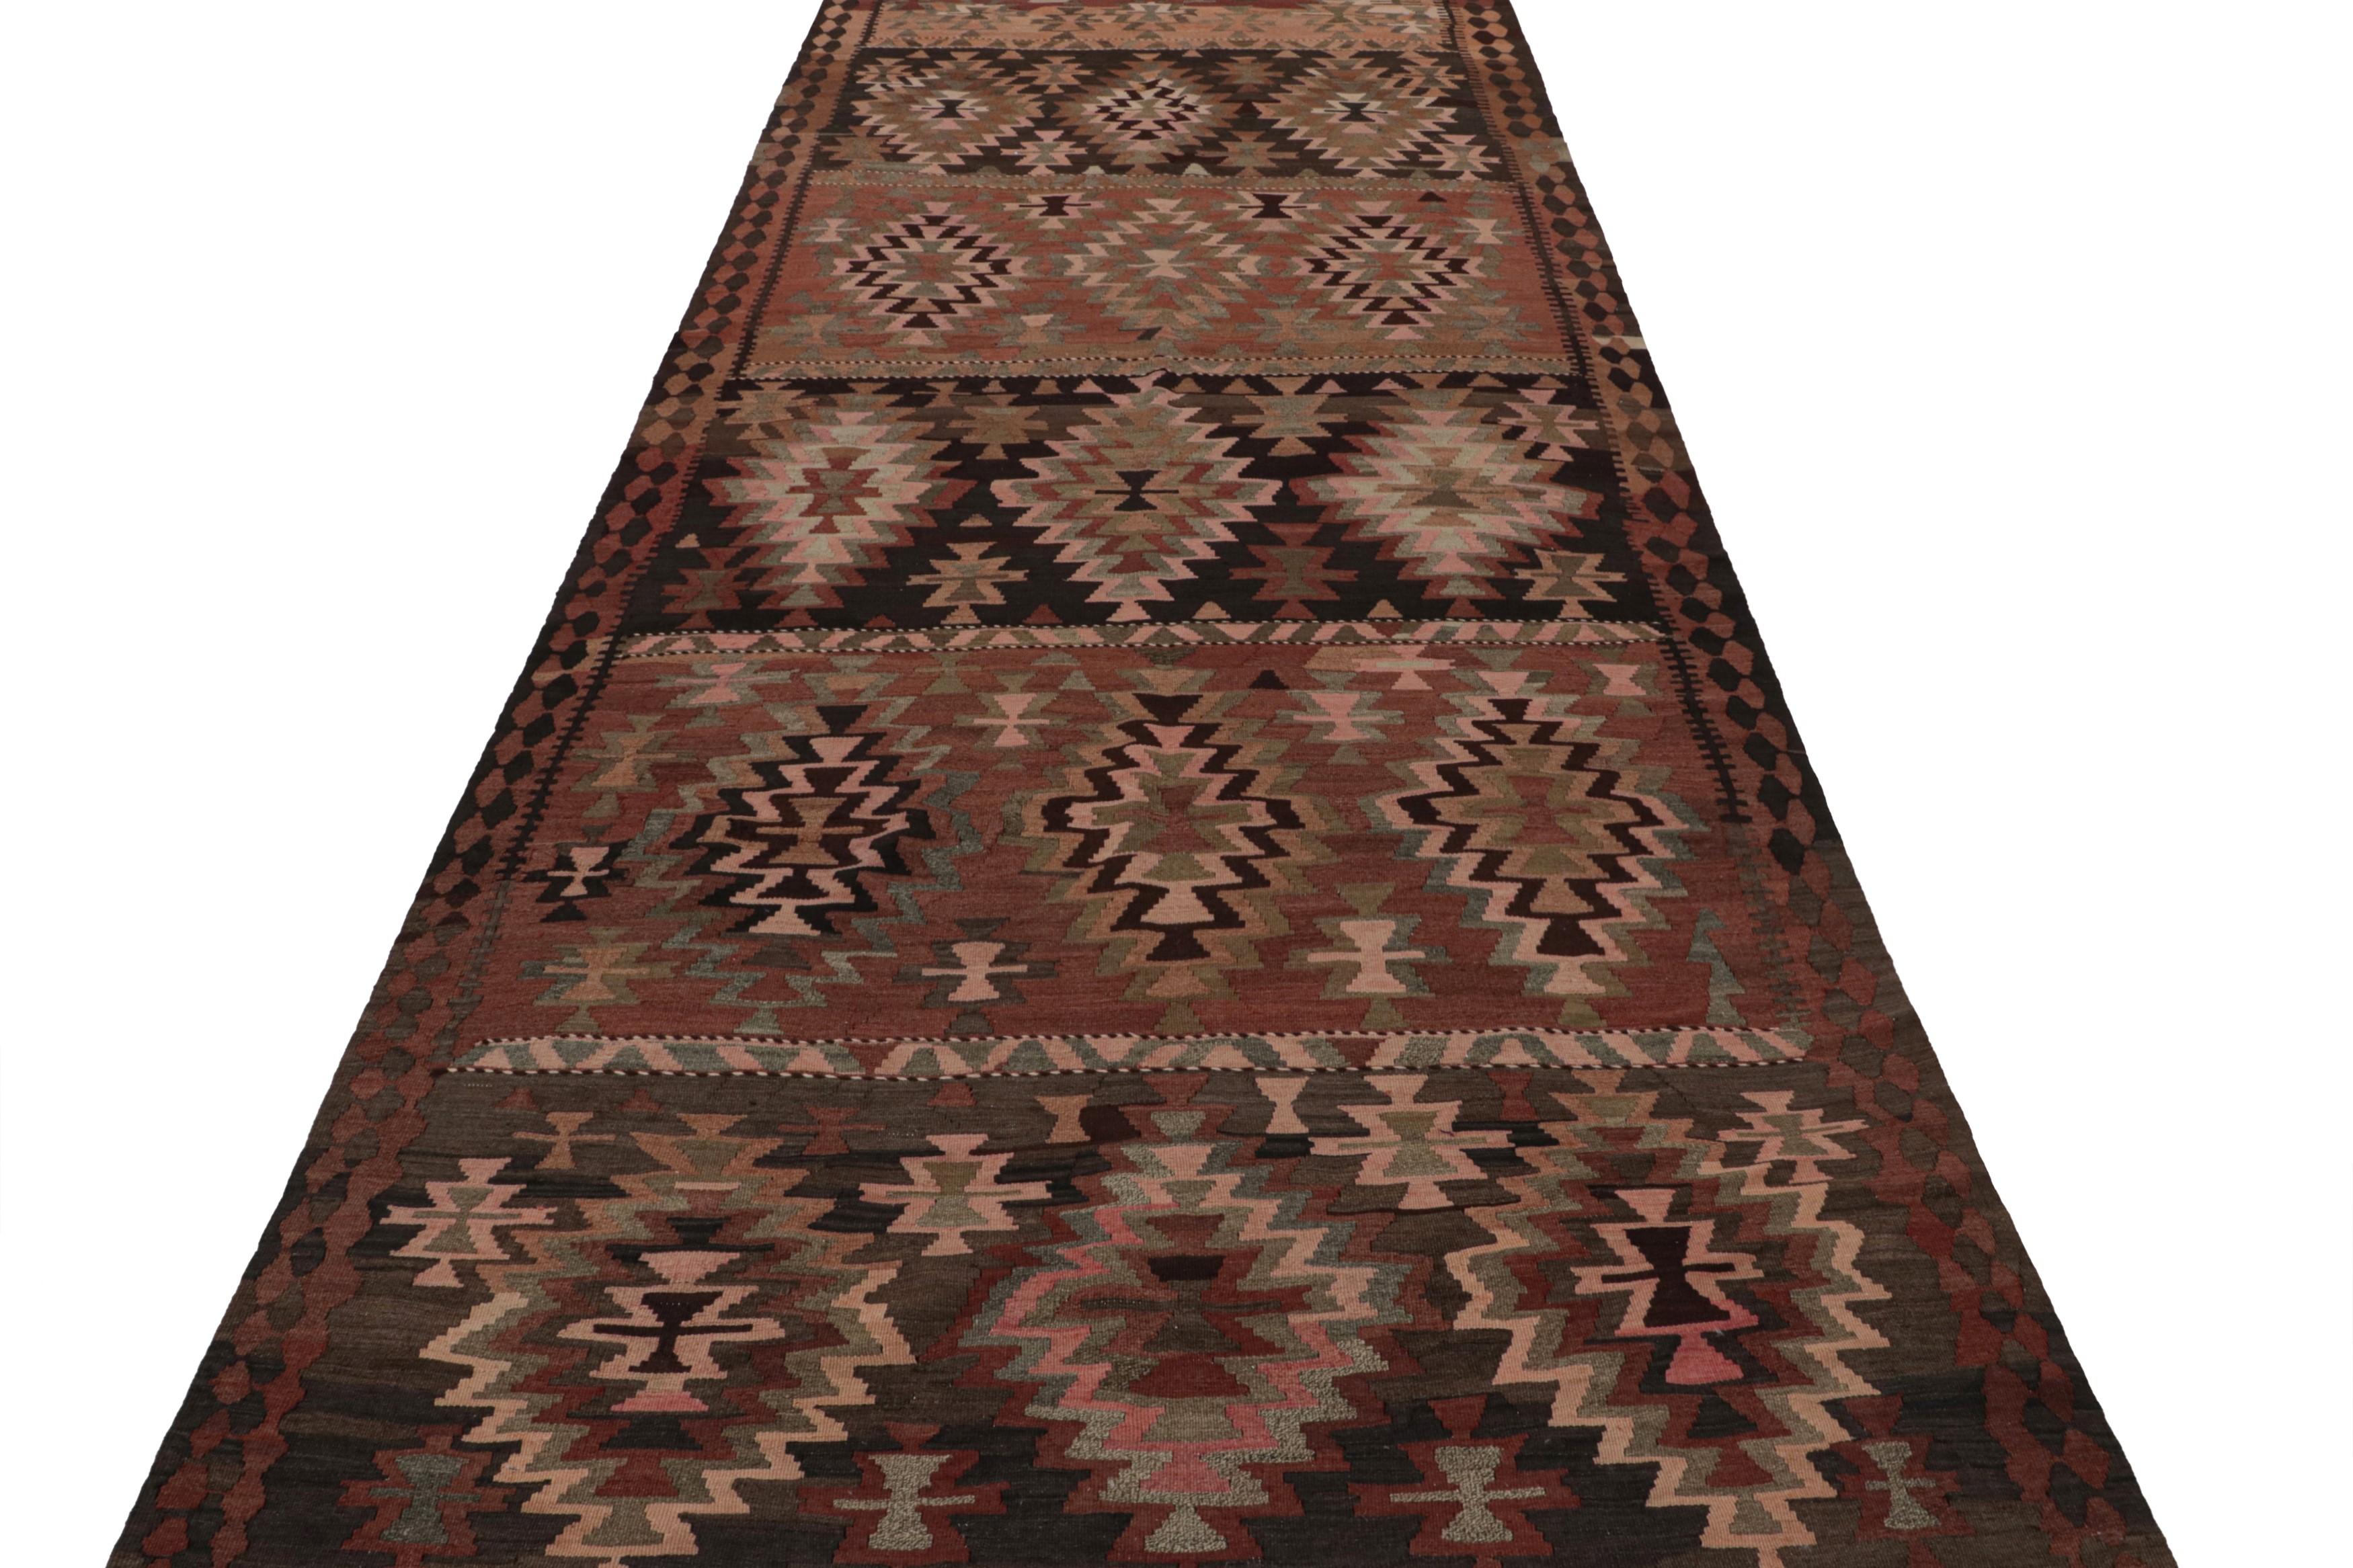 Tribal Vintage Afghan Kilim Runner Rug, with Geometric Patterns, from Rug & Kilim